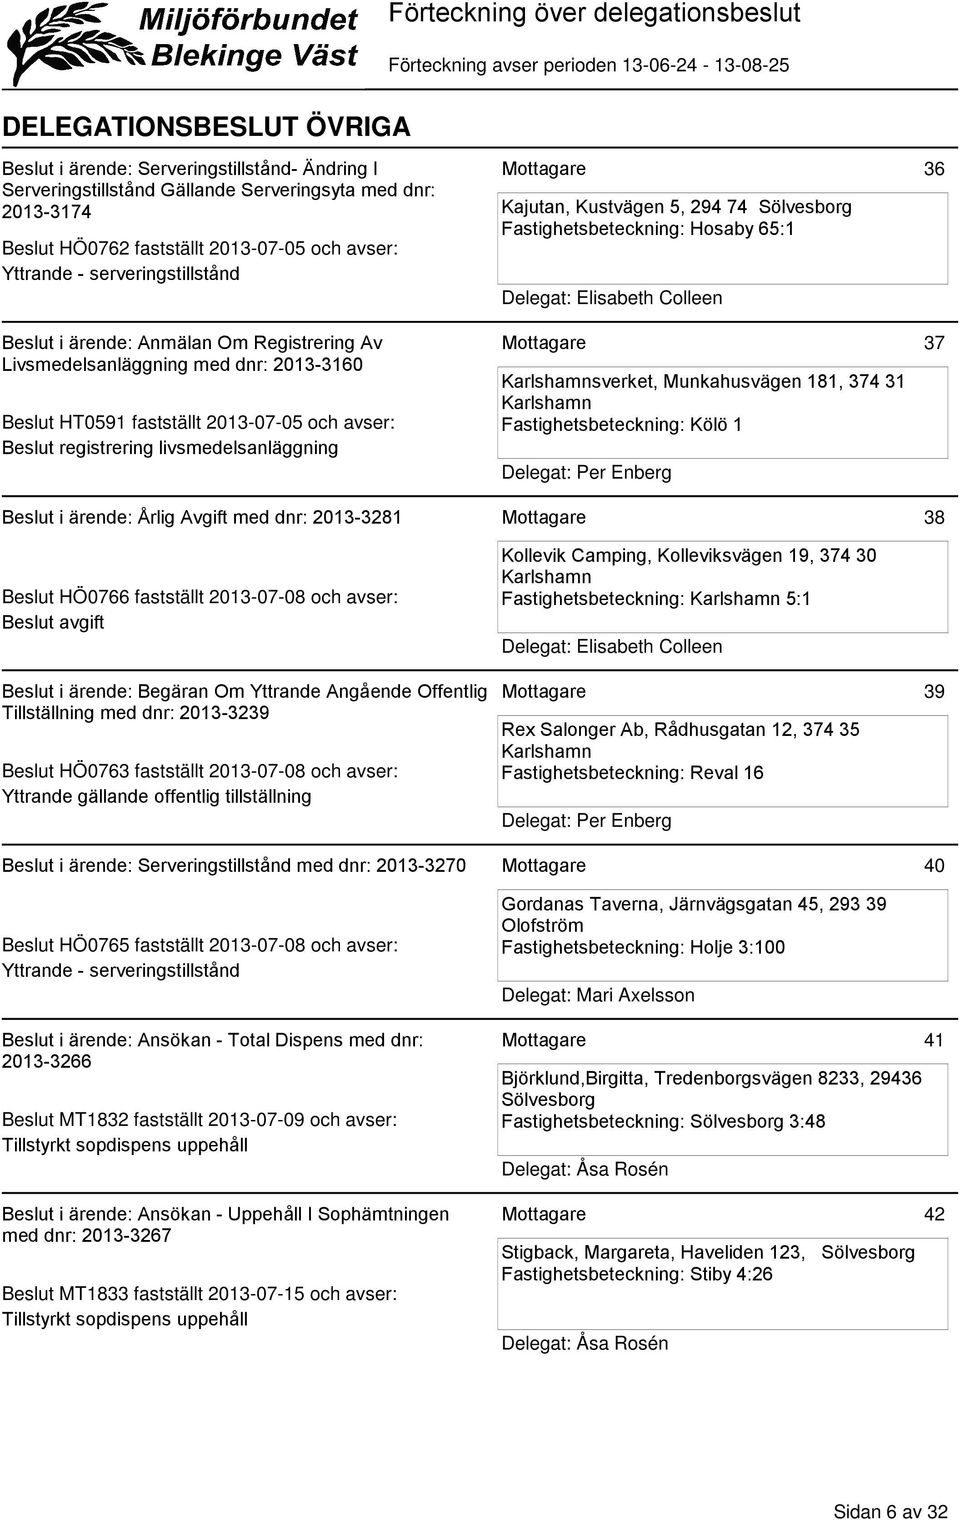 Delegat: Elisabeth Colleen sverket, Munkahusvägen 181, 374 31 Fastighetsbeteckning: Kölö 1 36 37 Beslut i ärende: Årlig Avgift med dnr: 2013-3281 38 Beslut HÖ0766 fastställt 2013-07-08 och avser: